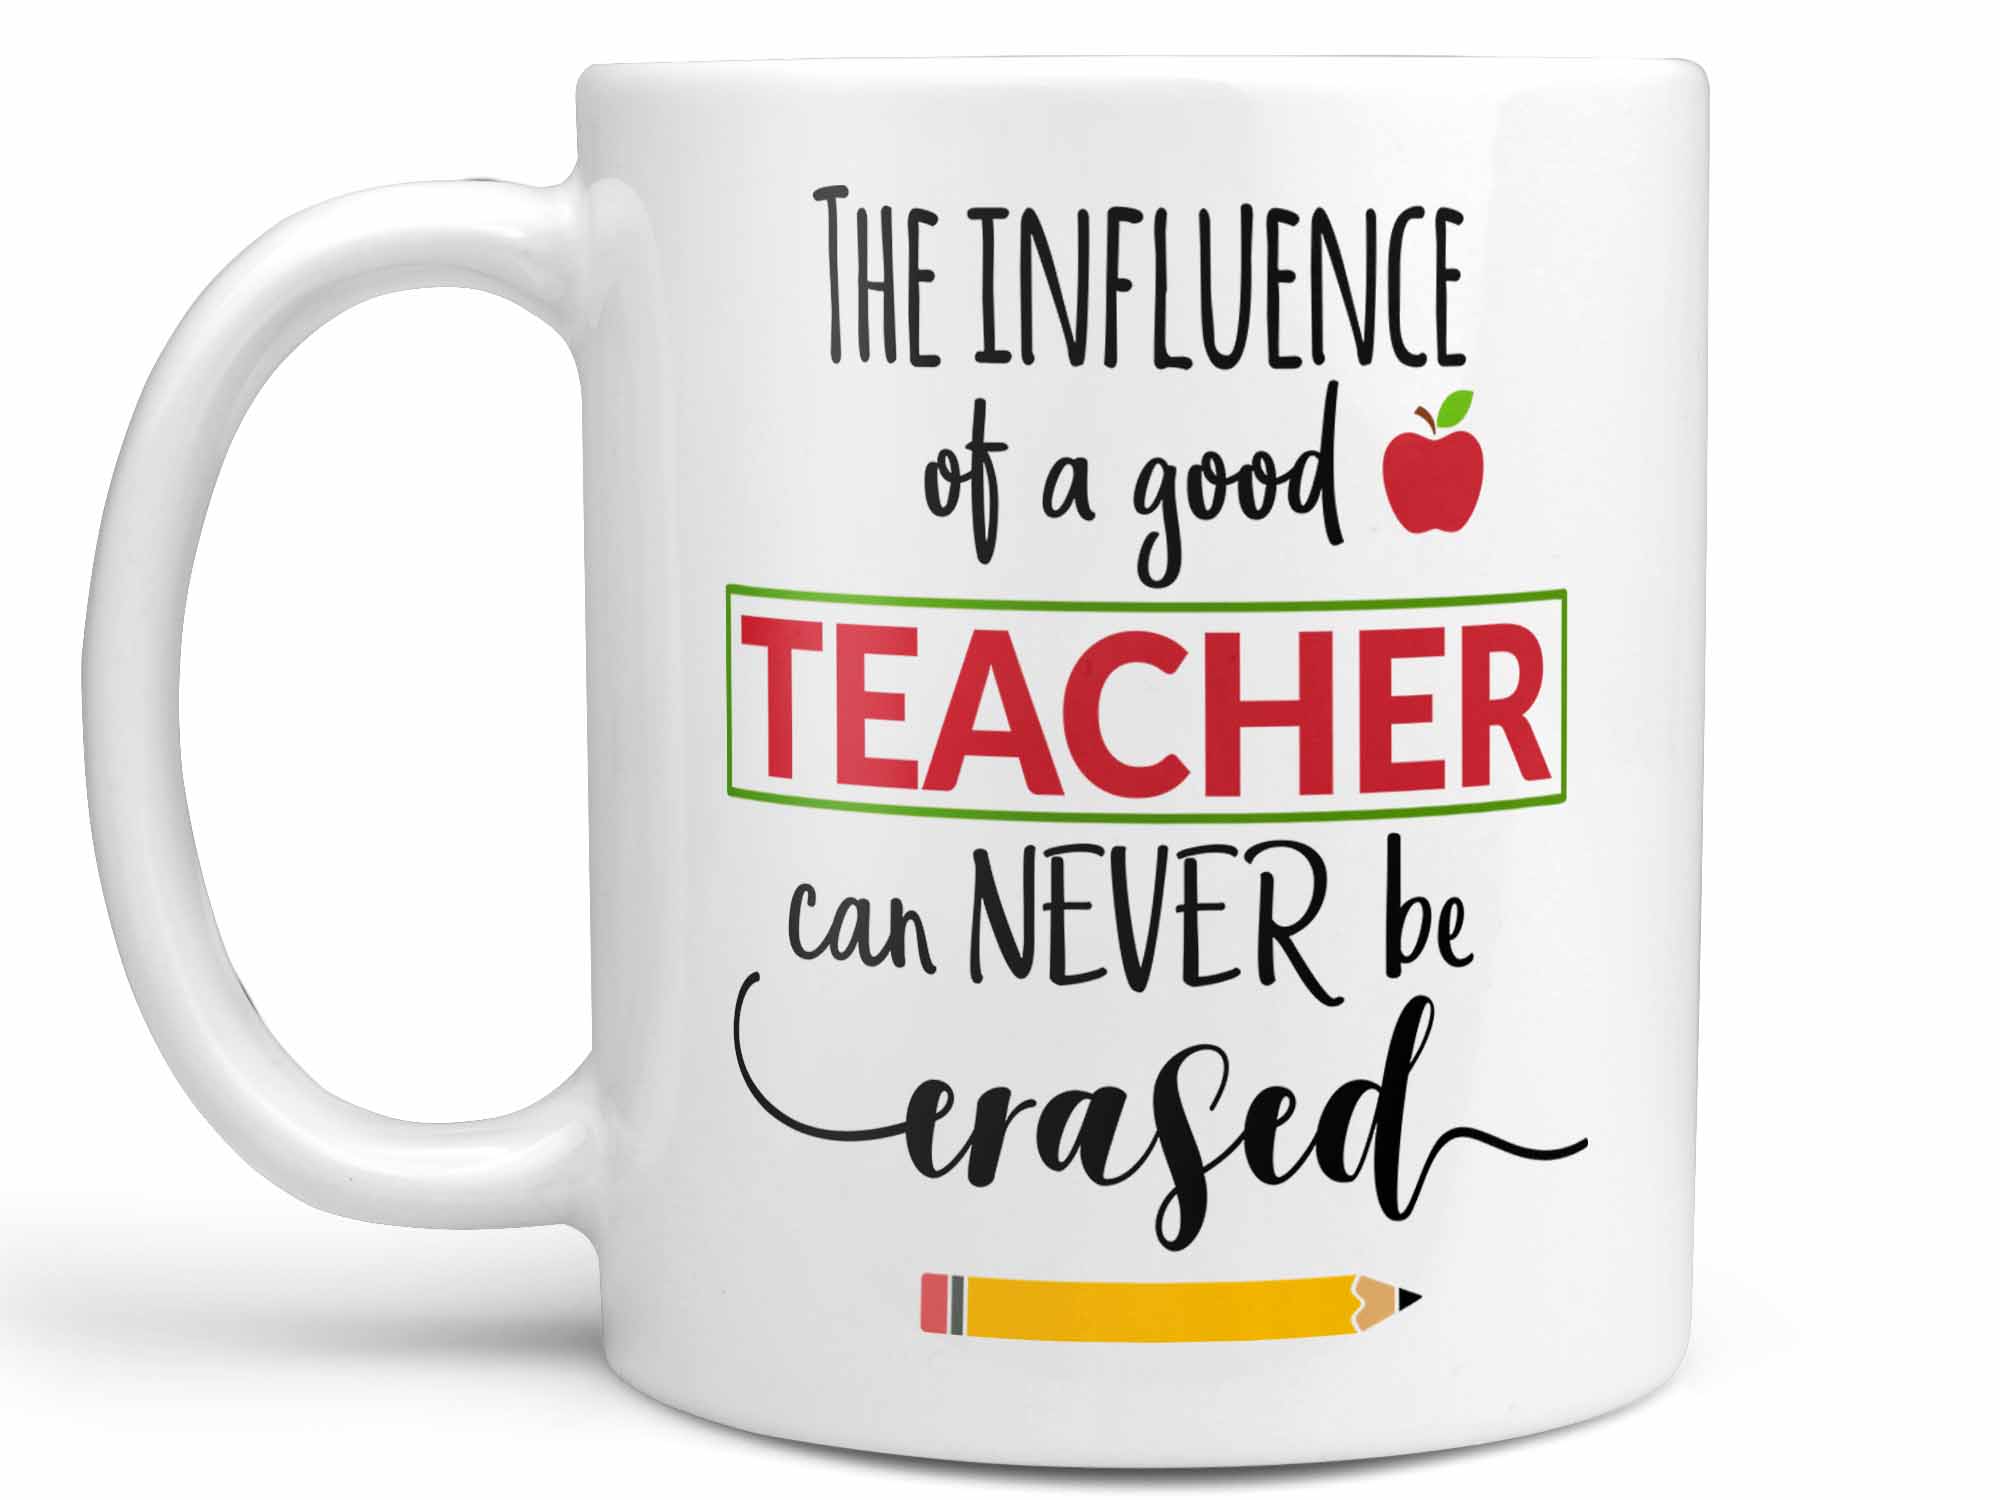 Teacher Influence Coffee Mug,Coffee Mugs Never Lie,Coffee Mug